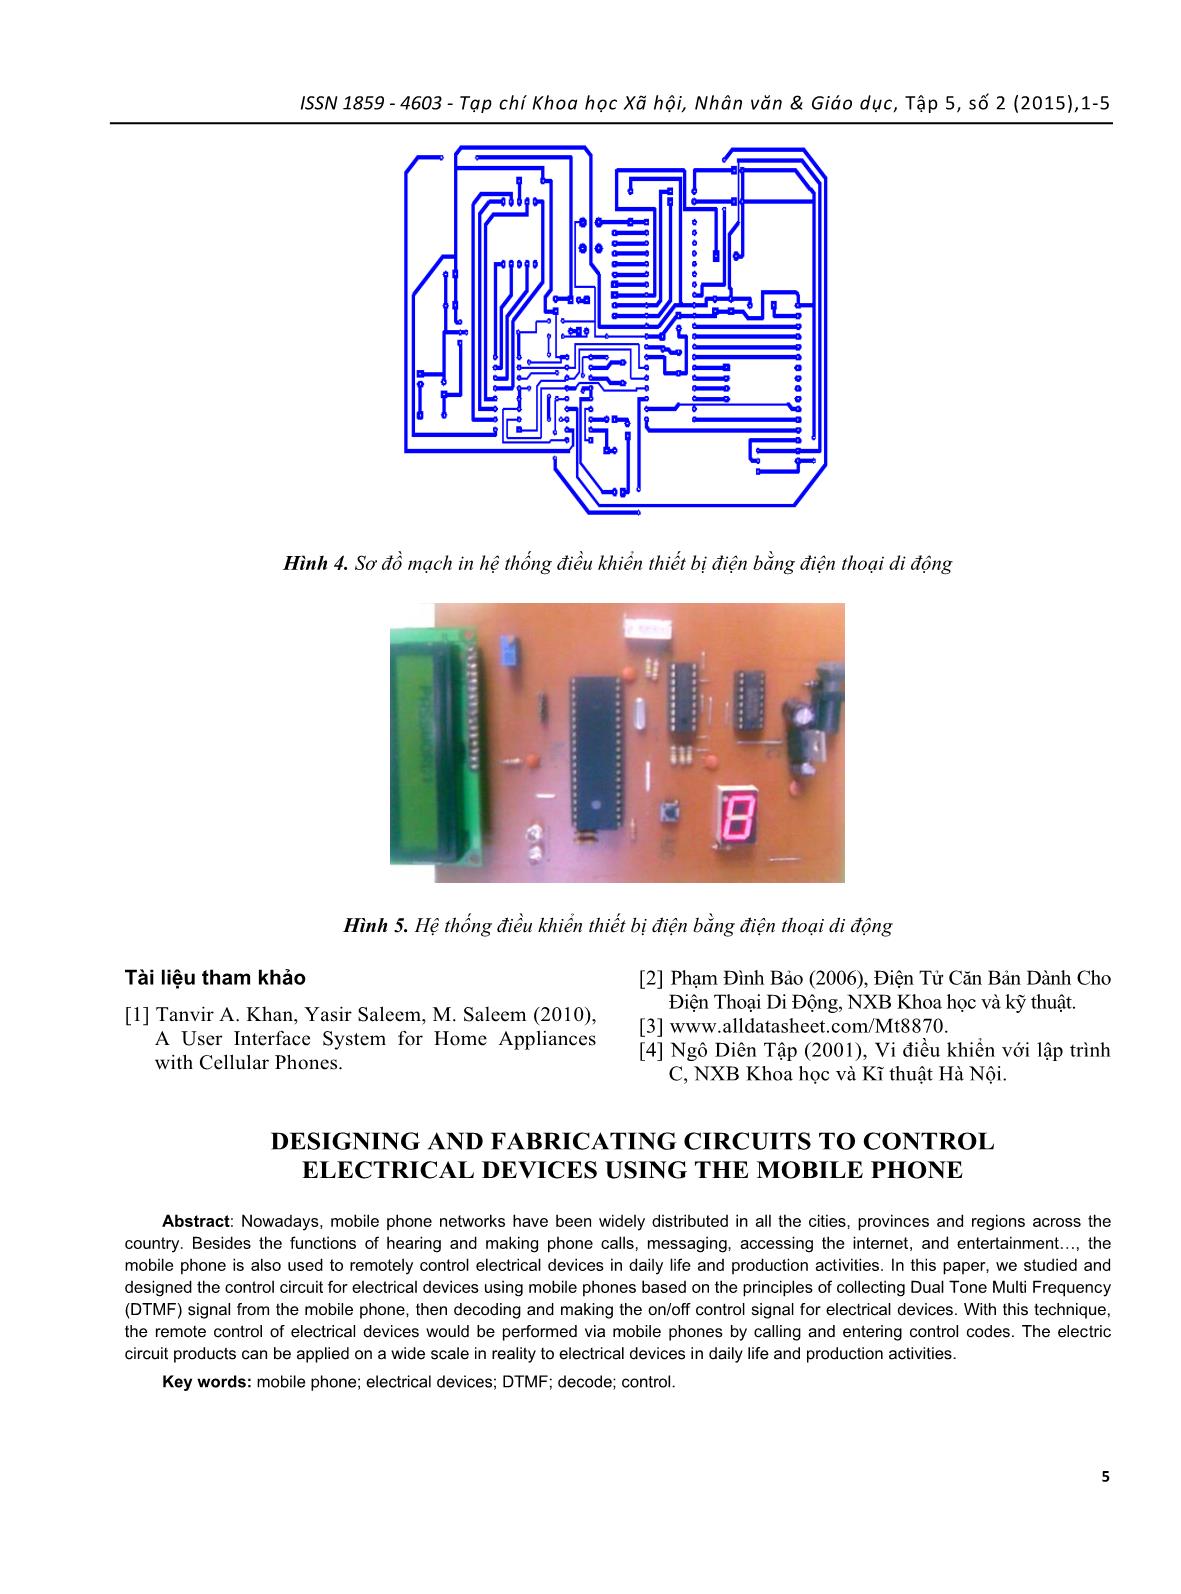 Nghiên cứu thiết kế, chế tạo mạch điều khiển thiết bị điện bằng điện thoại di động trang 5